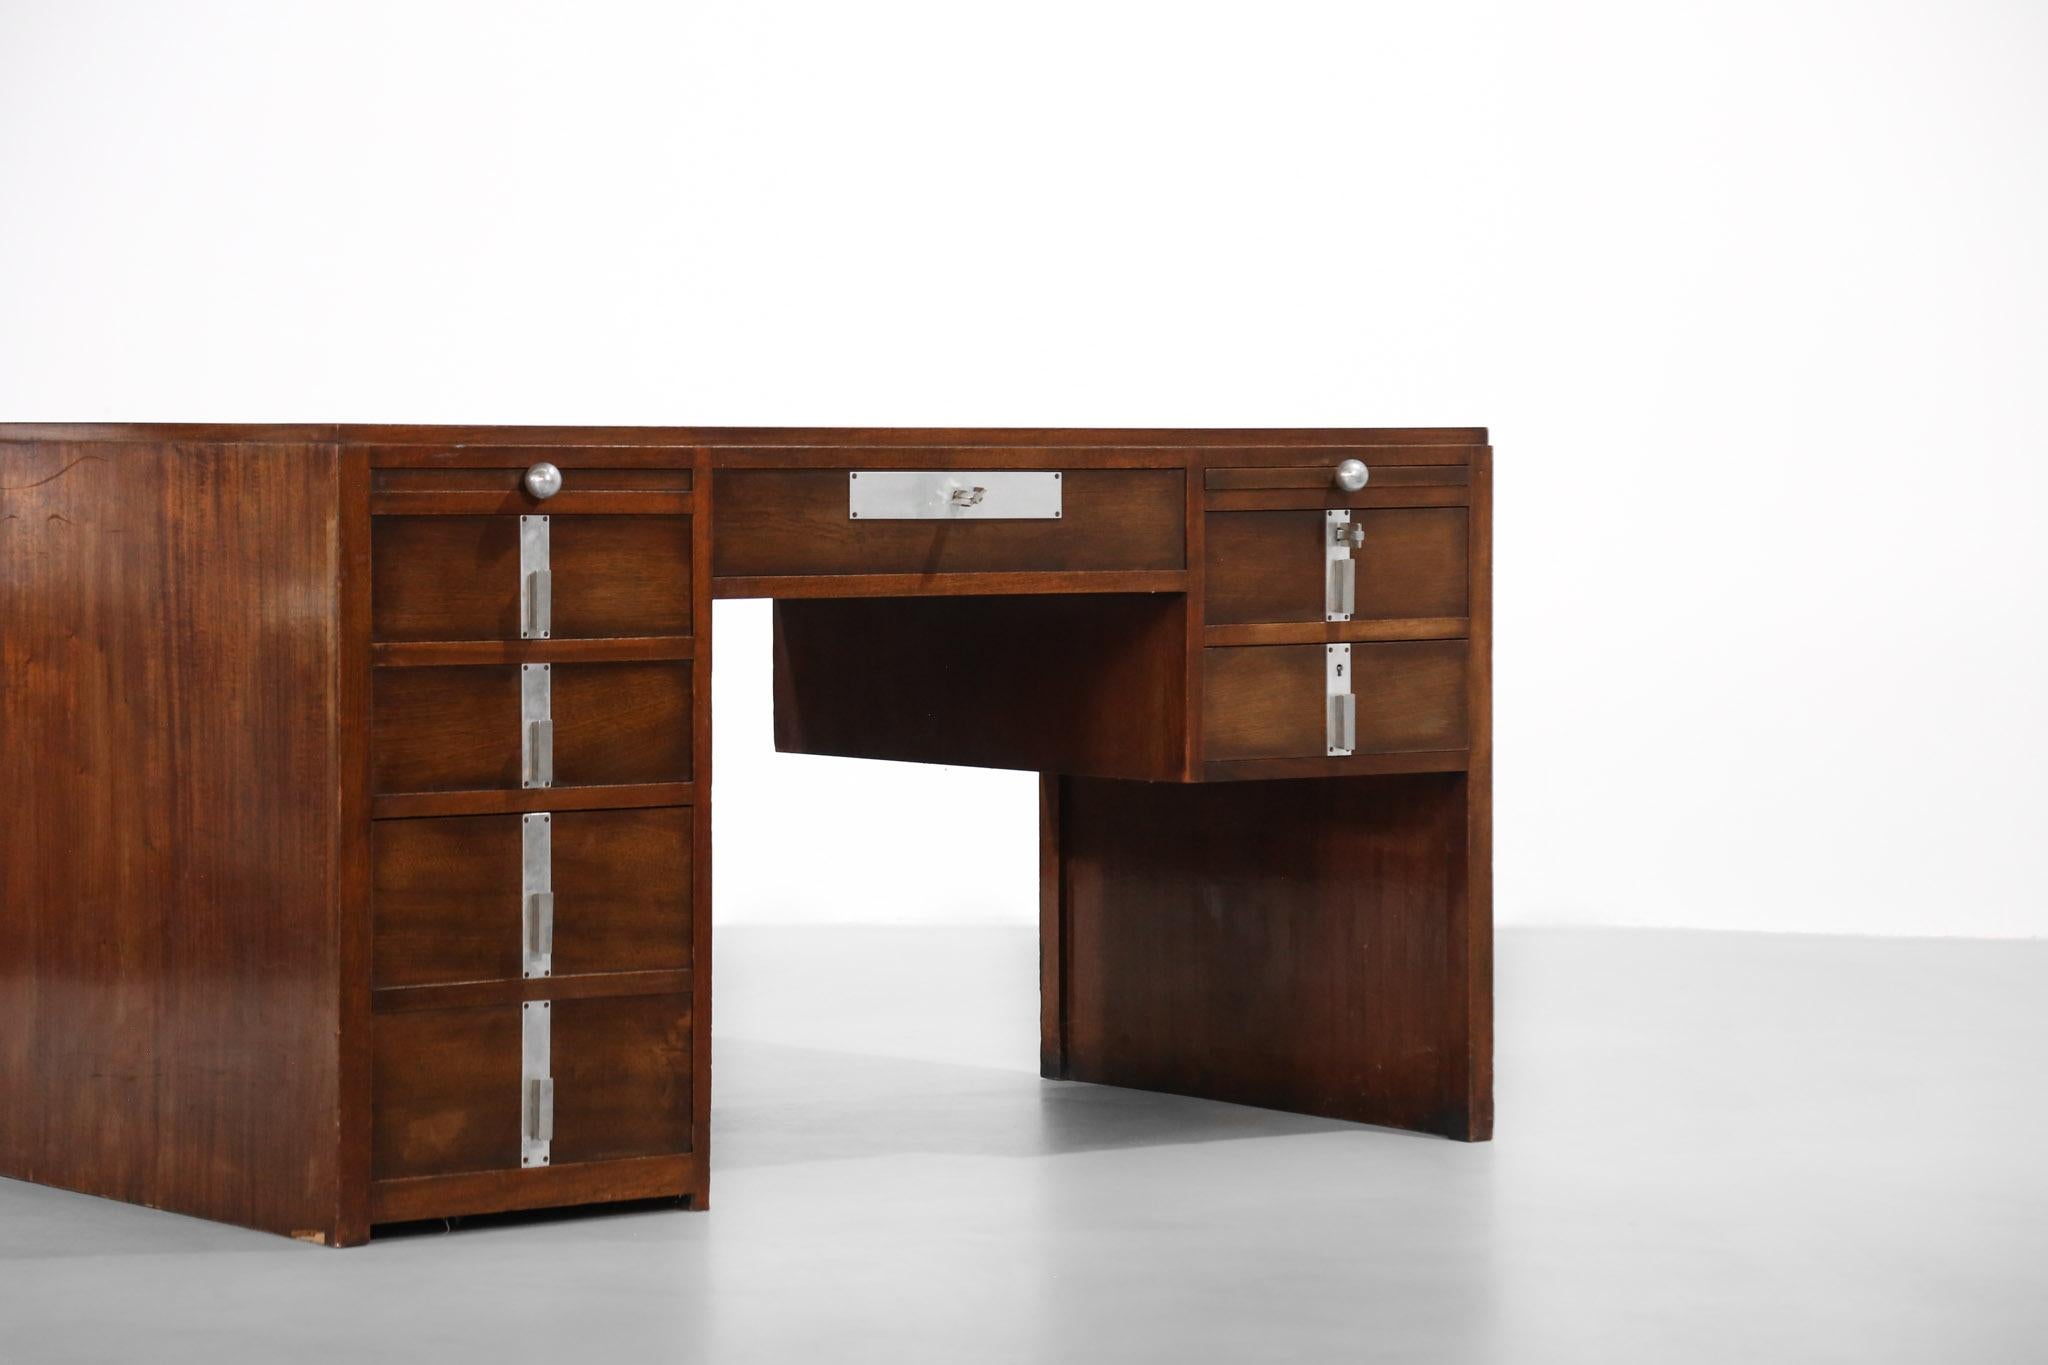 20th Century Art Deco Desk, Pierre Jeanneret/Jacques Adnet Style, Modernist